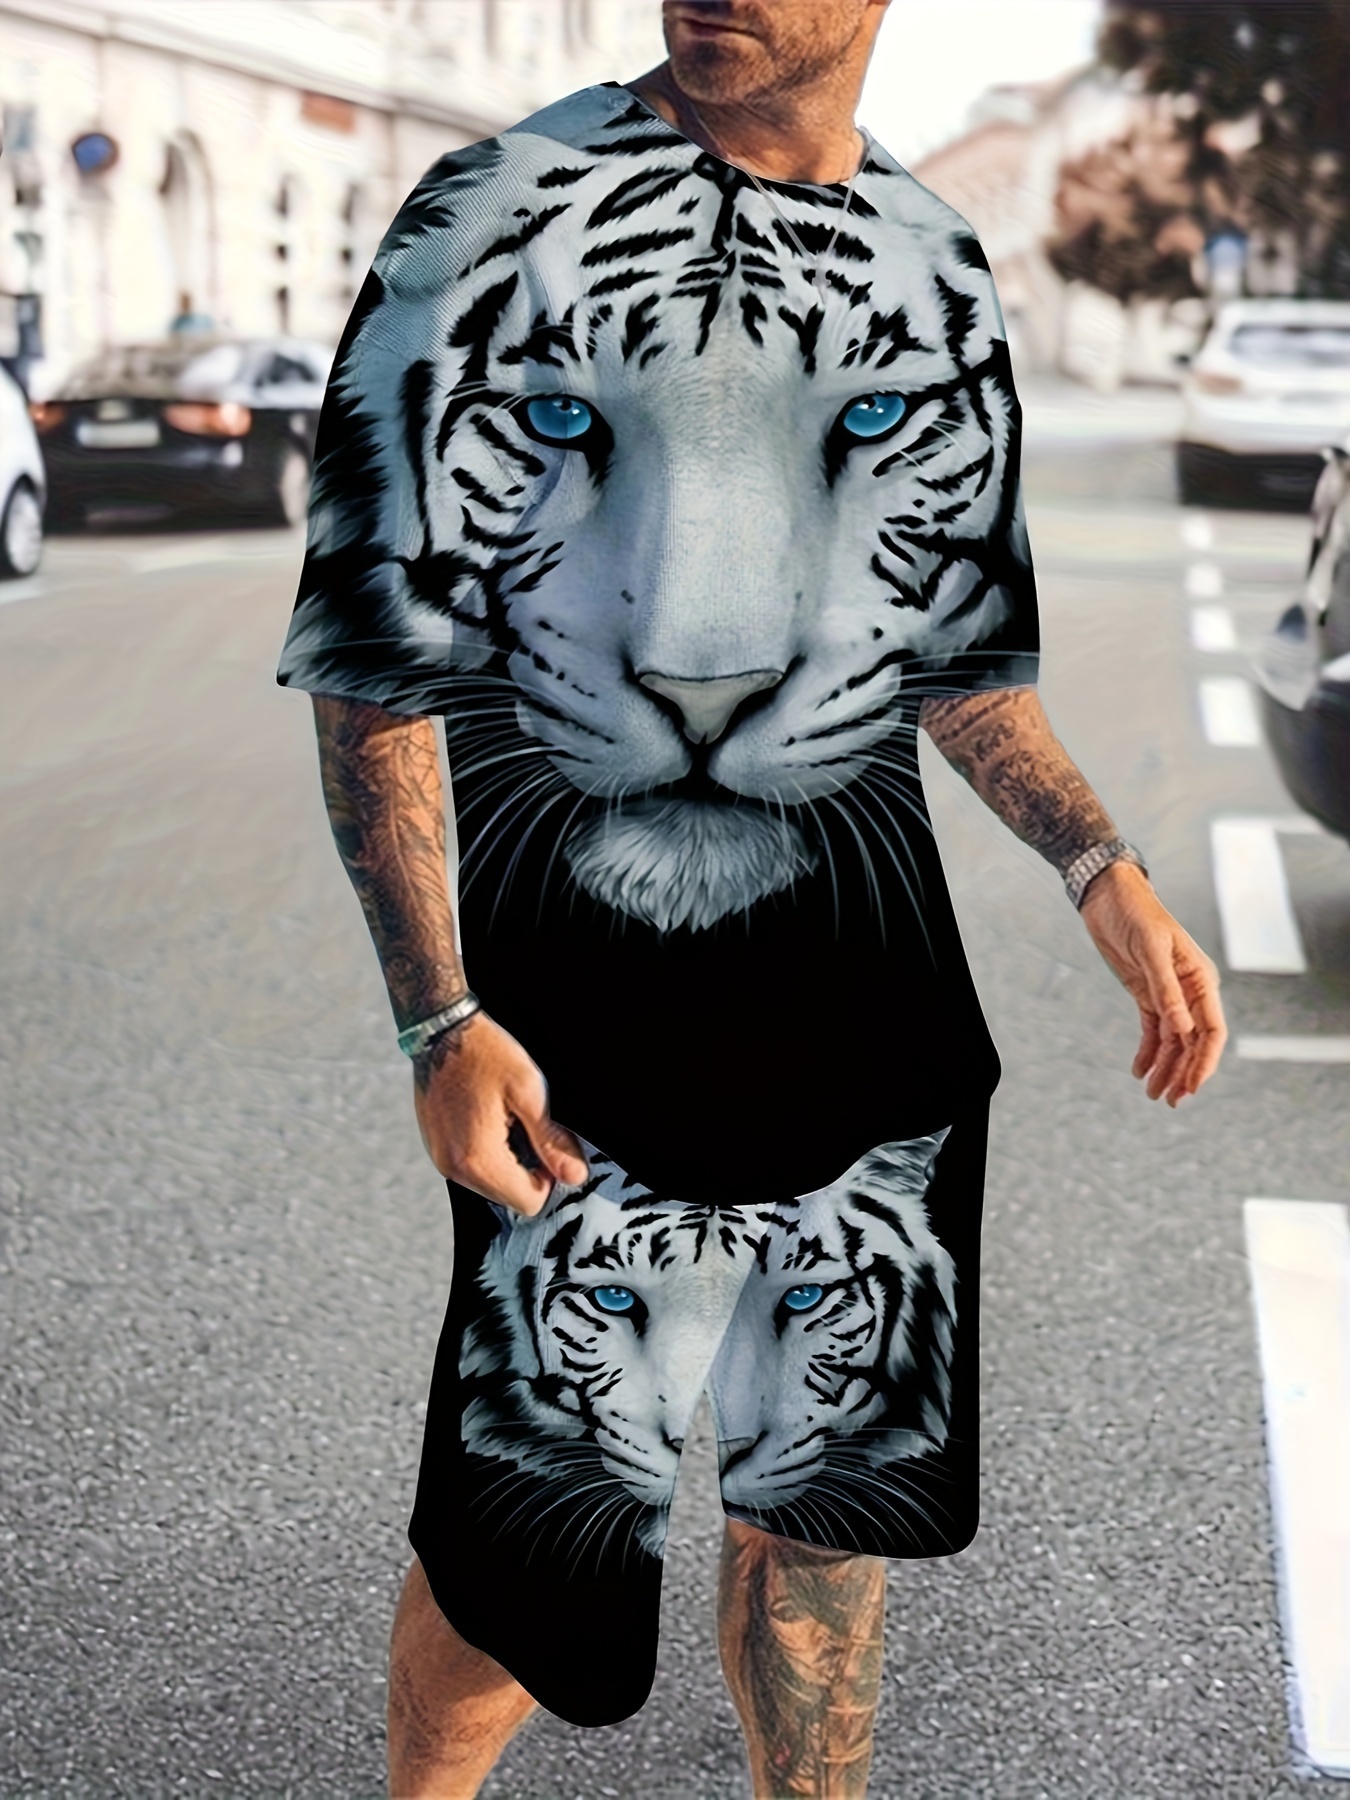 Tiger Sweatshirt - Temu Canada